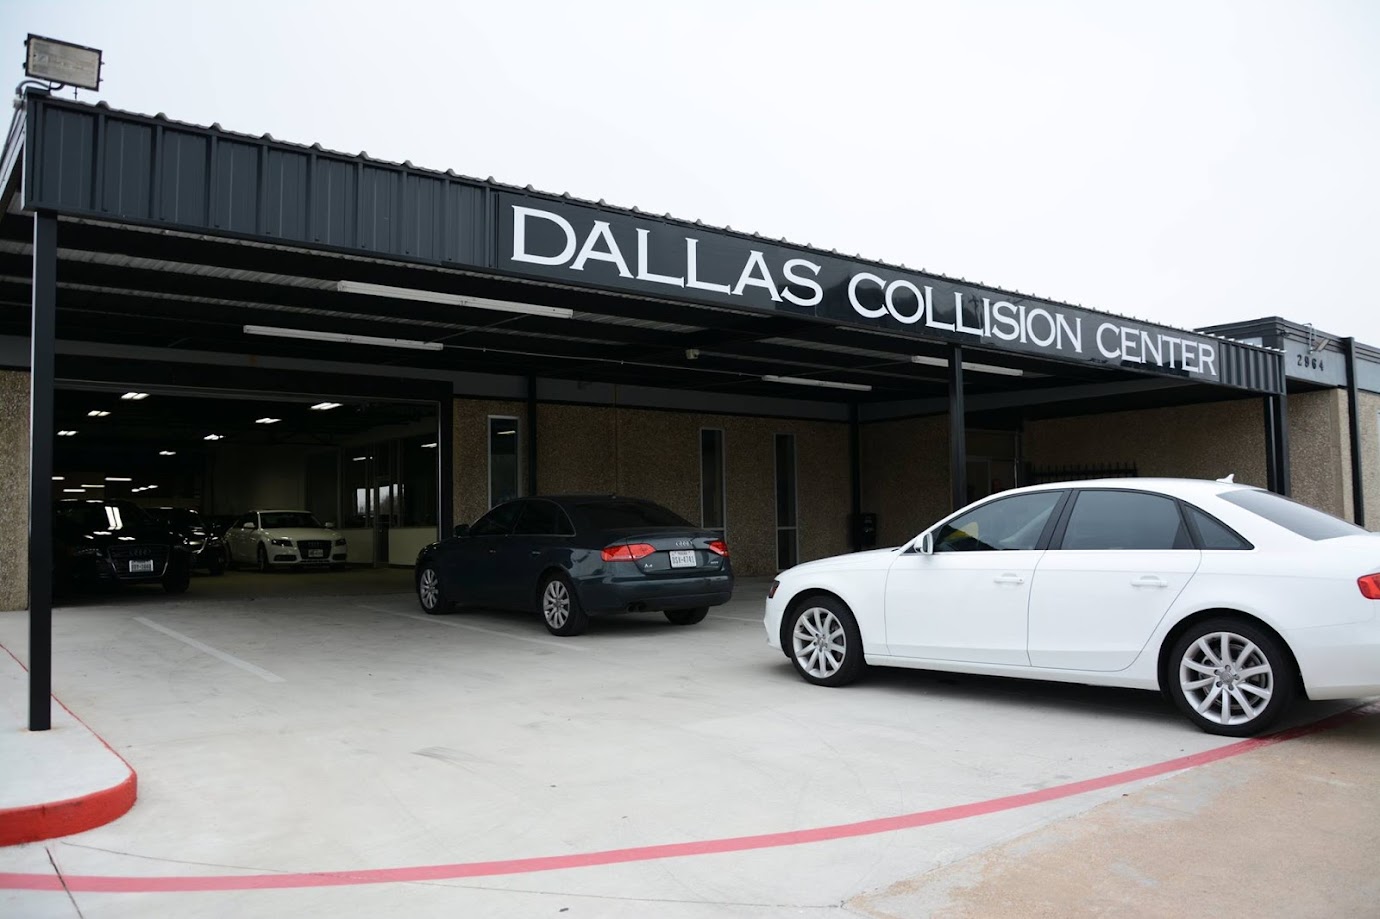 Dallas Collision Center